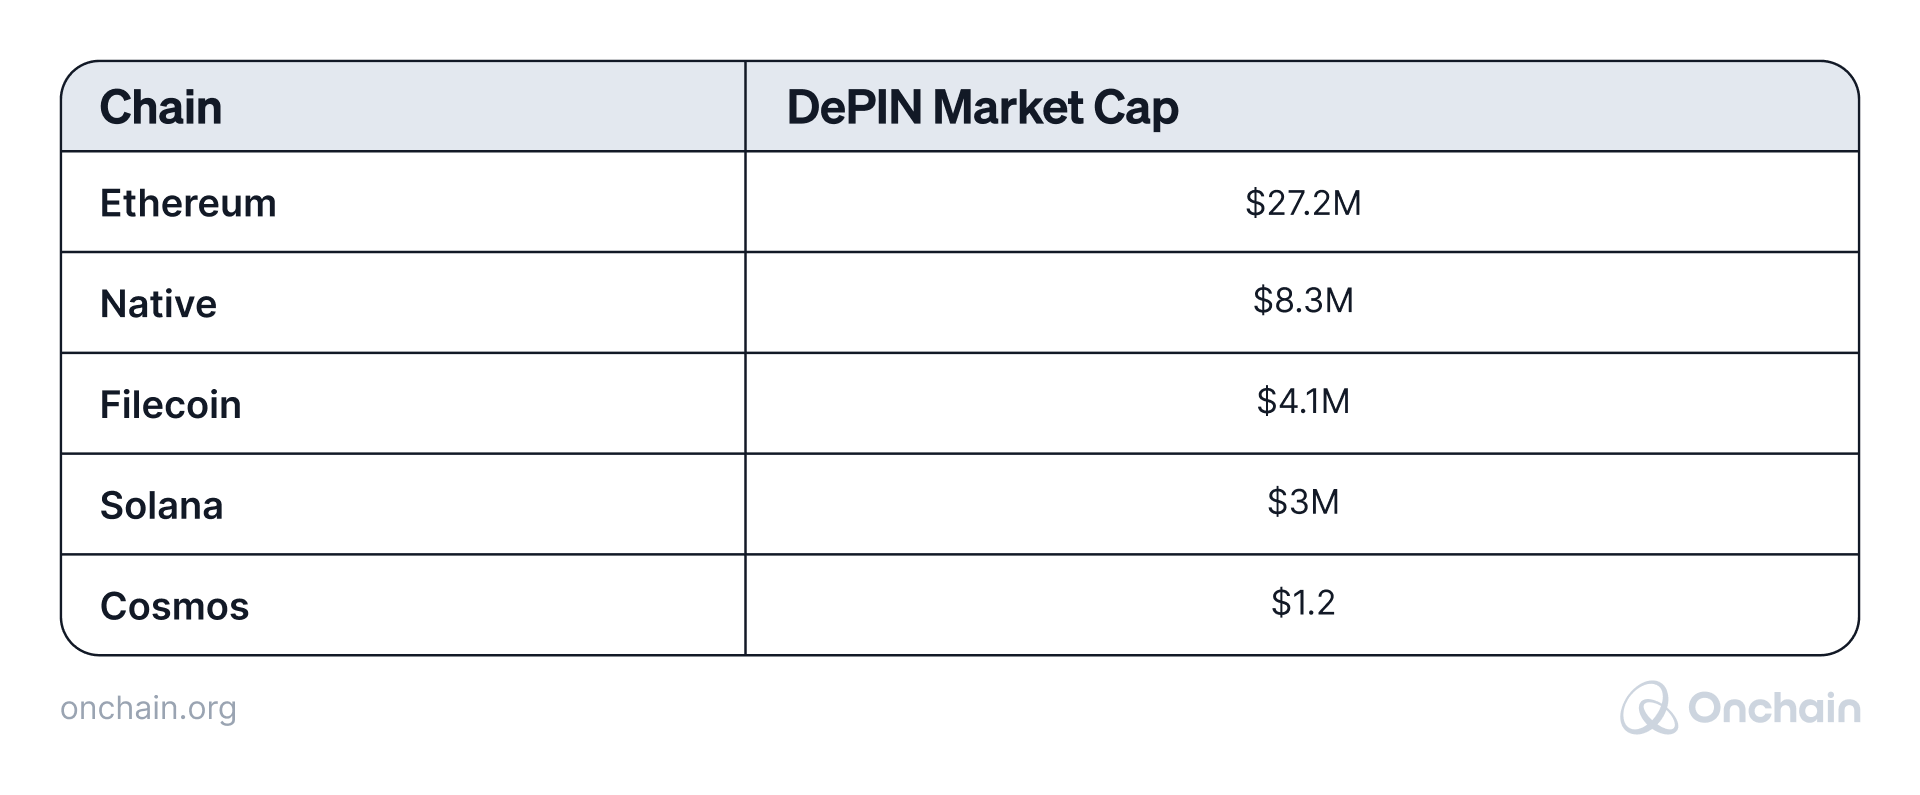 depin-market-cap